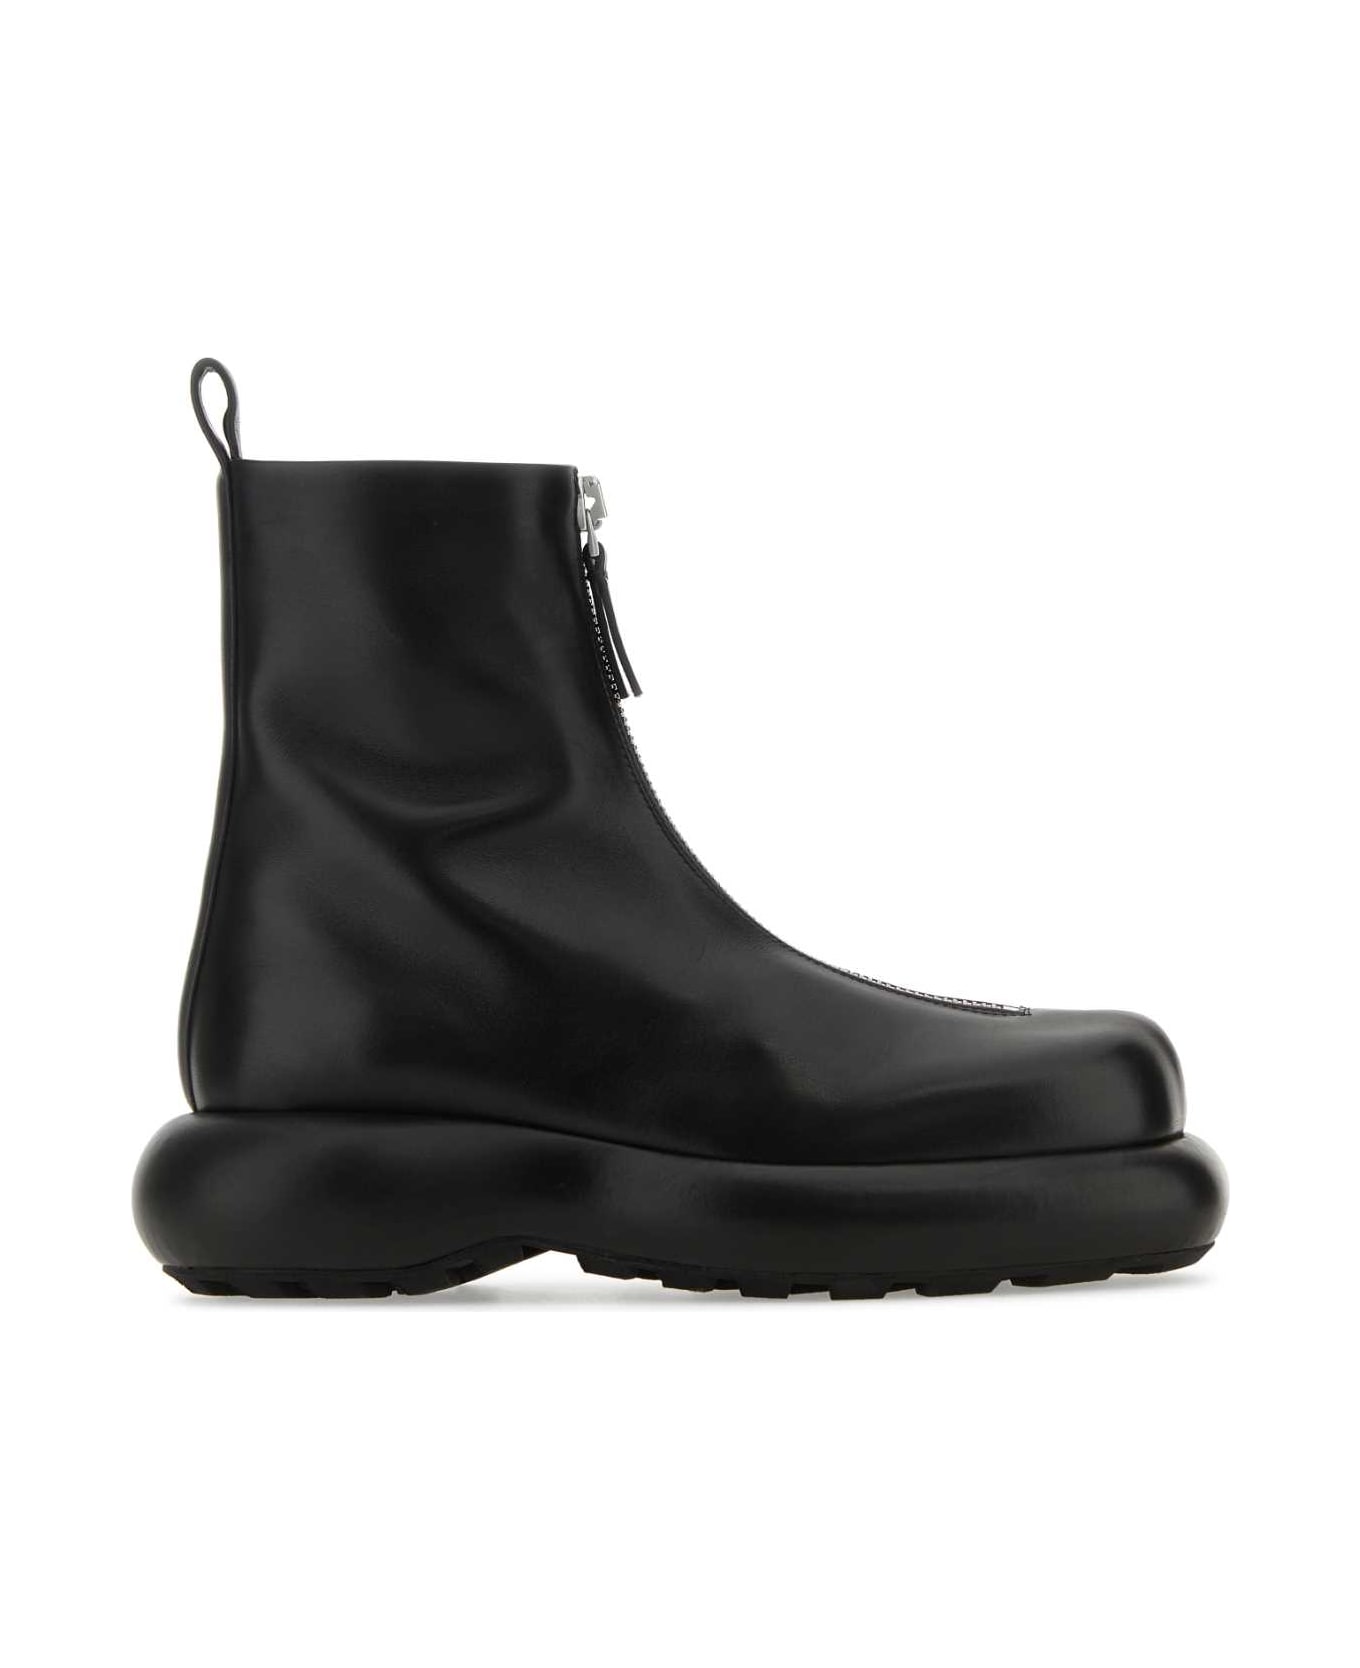 Jil Sander Black Leather Ankle Boots - 001